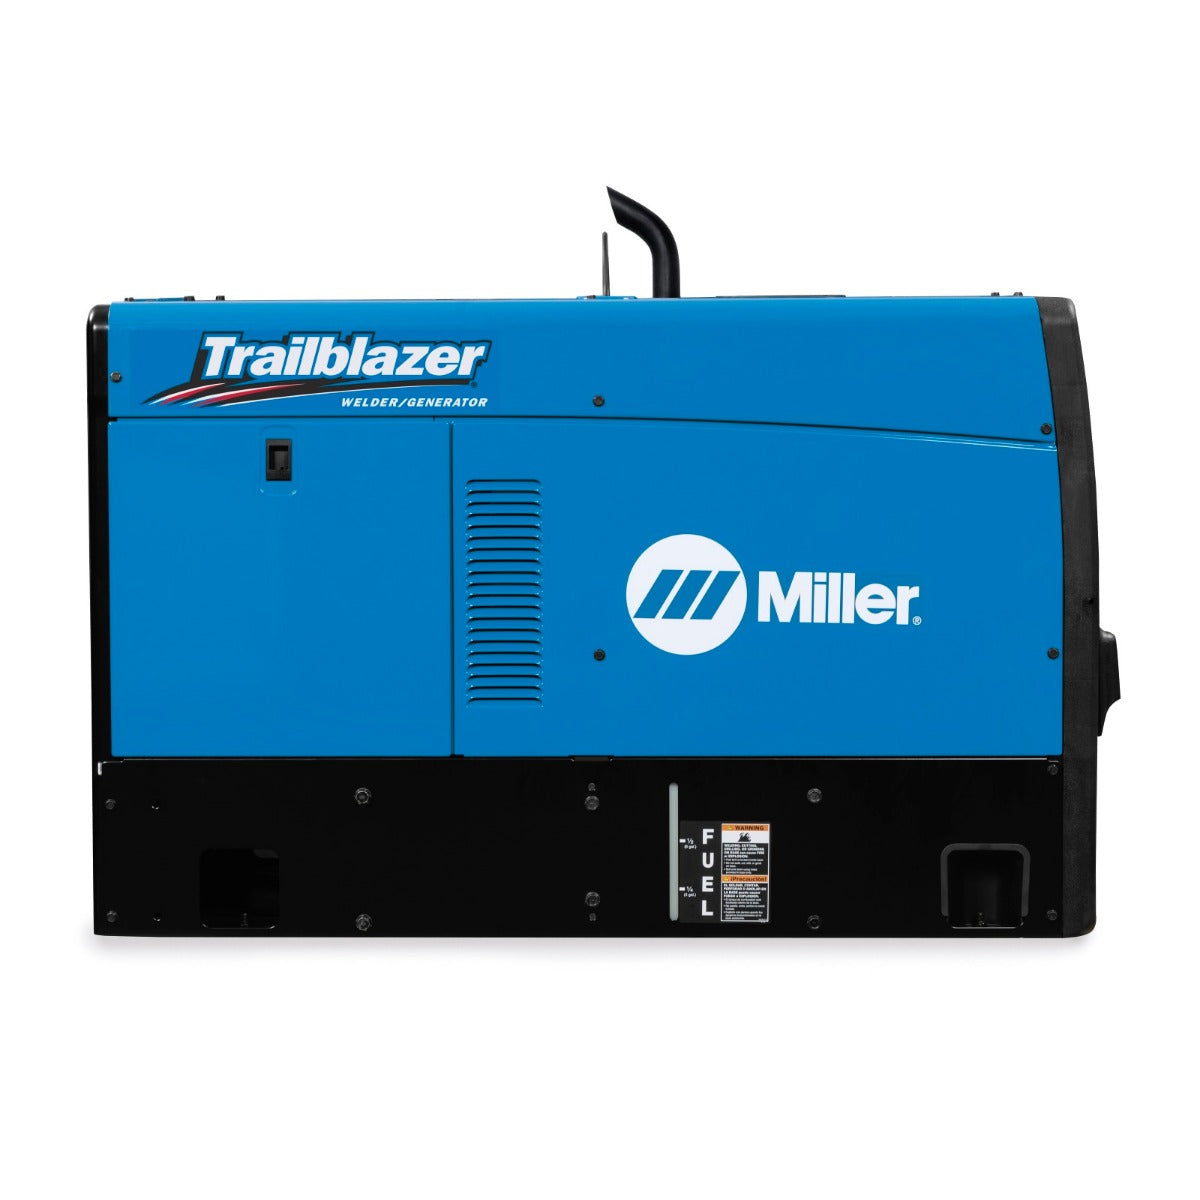 Miller Trailblazer 325 Kubota Diesel w/Excel Power, GFCI, and ArcReach - 907799002